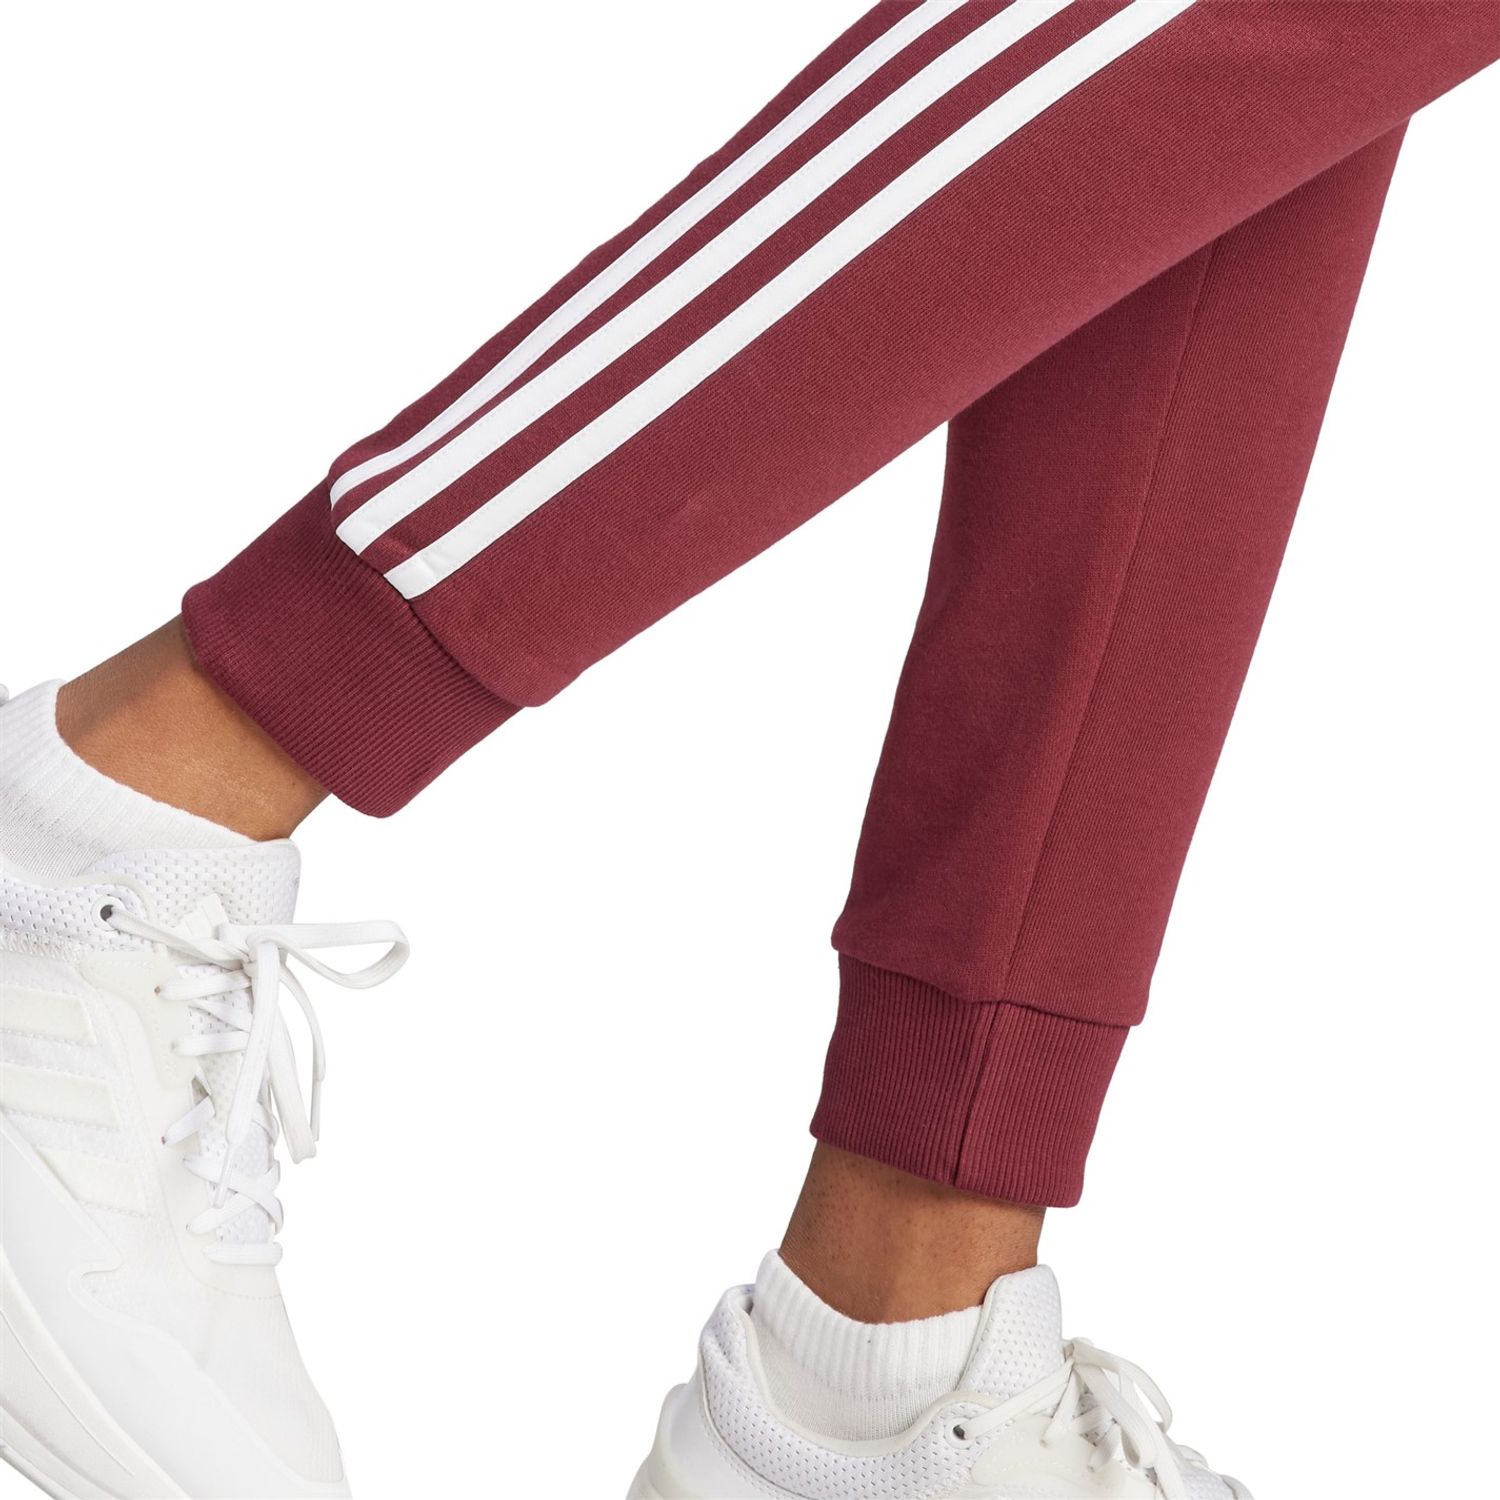 adidas, Womens 3-Stripes Pants Slim